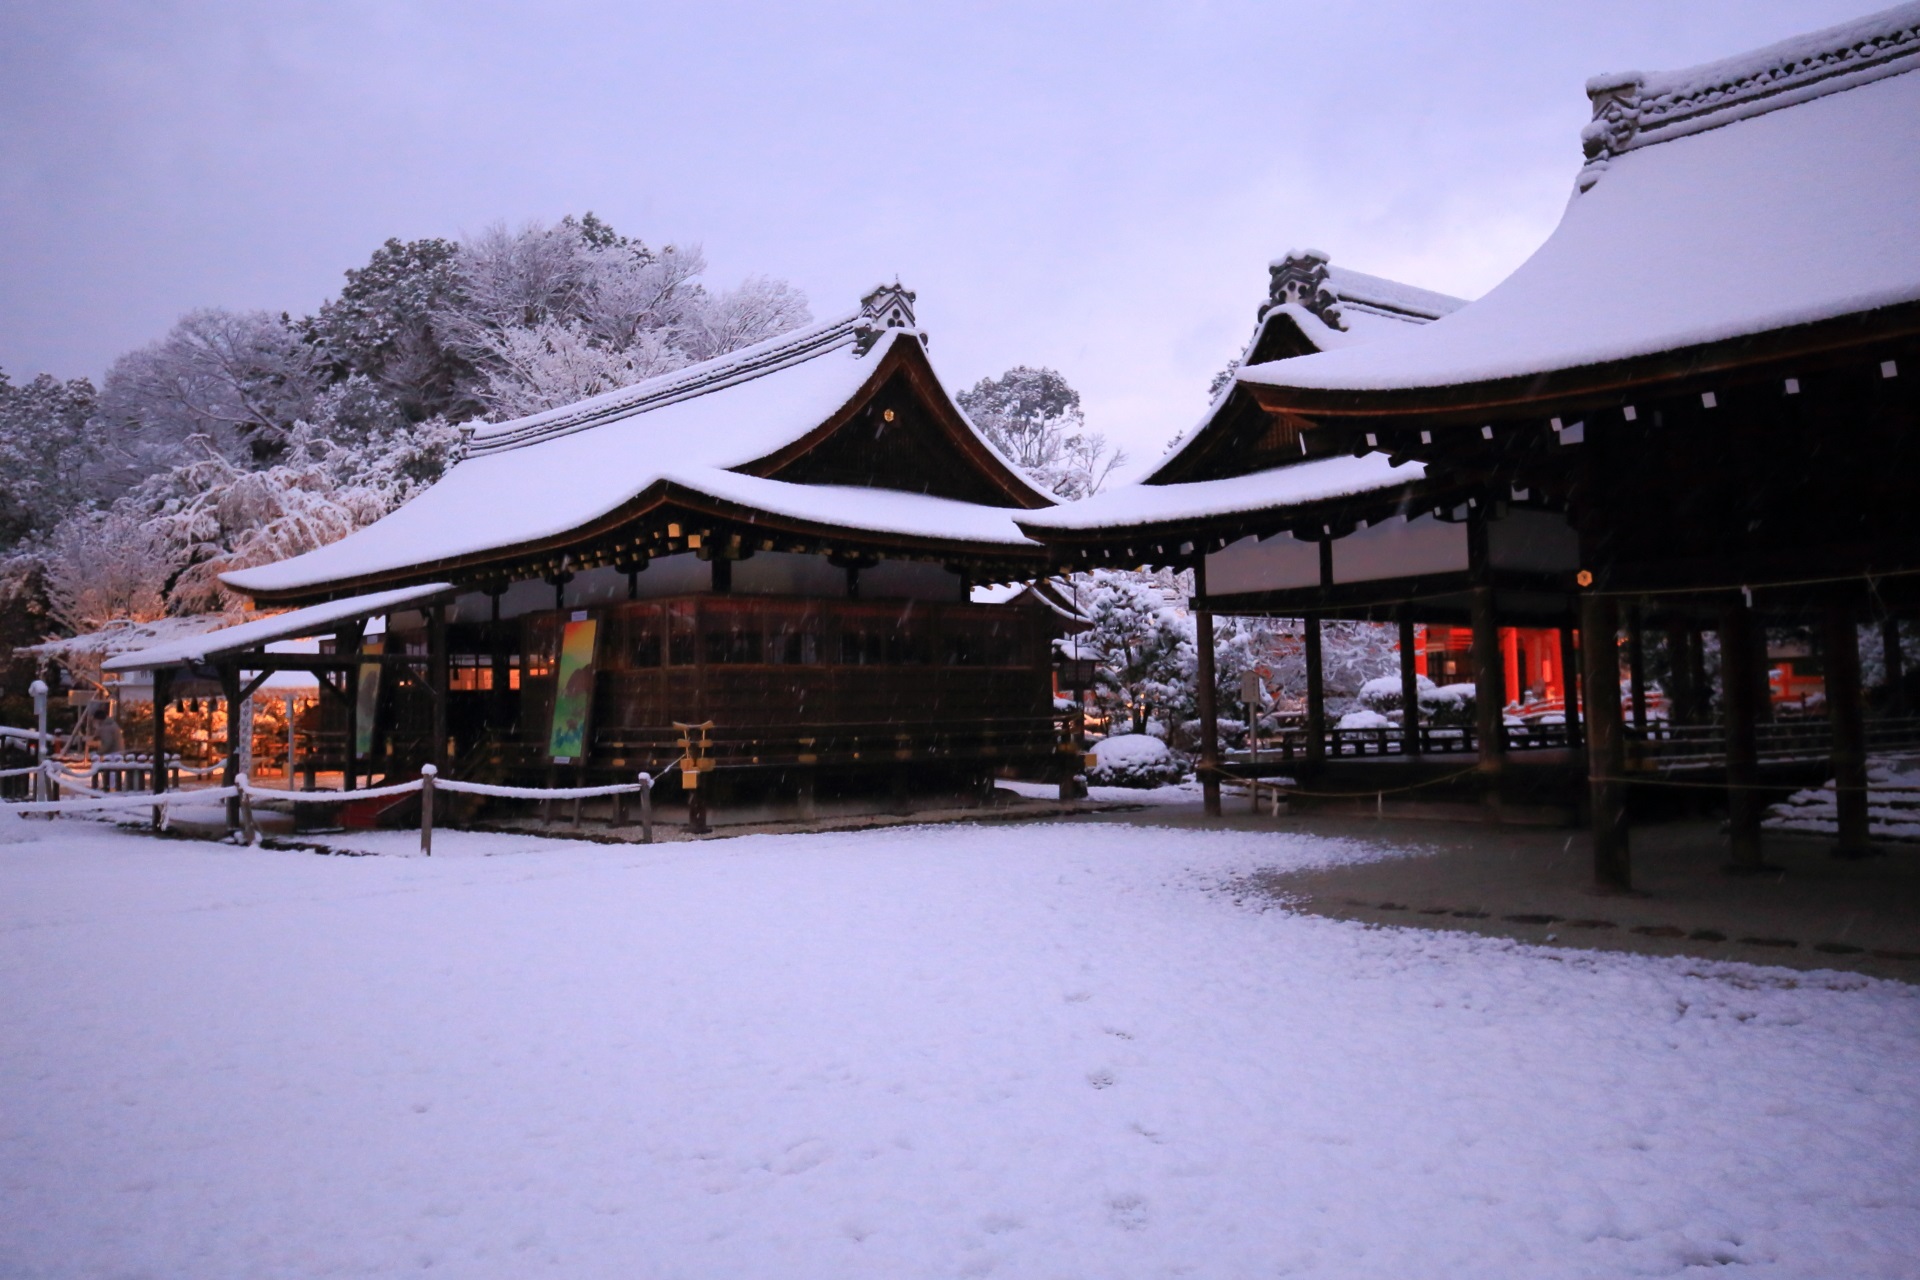 雪降る上賀茂神社の細殿と土舎